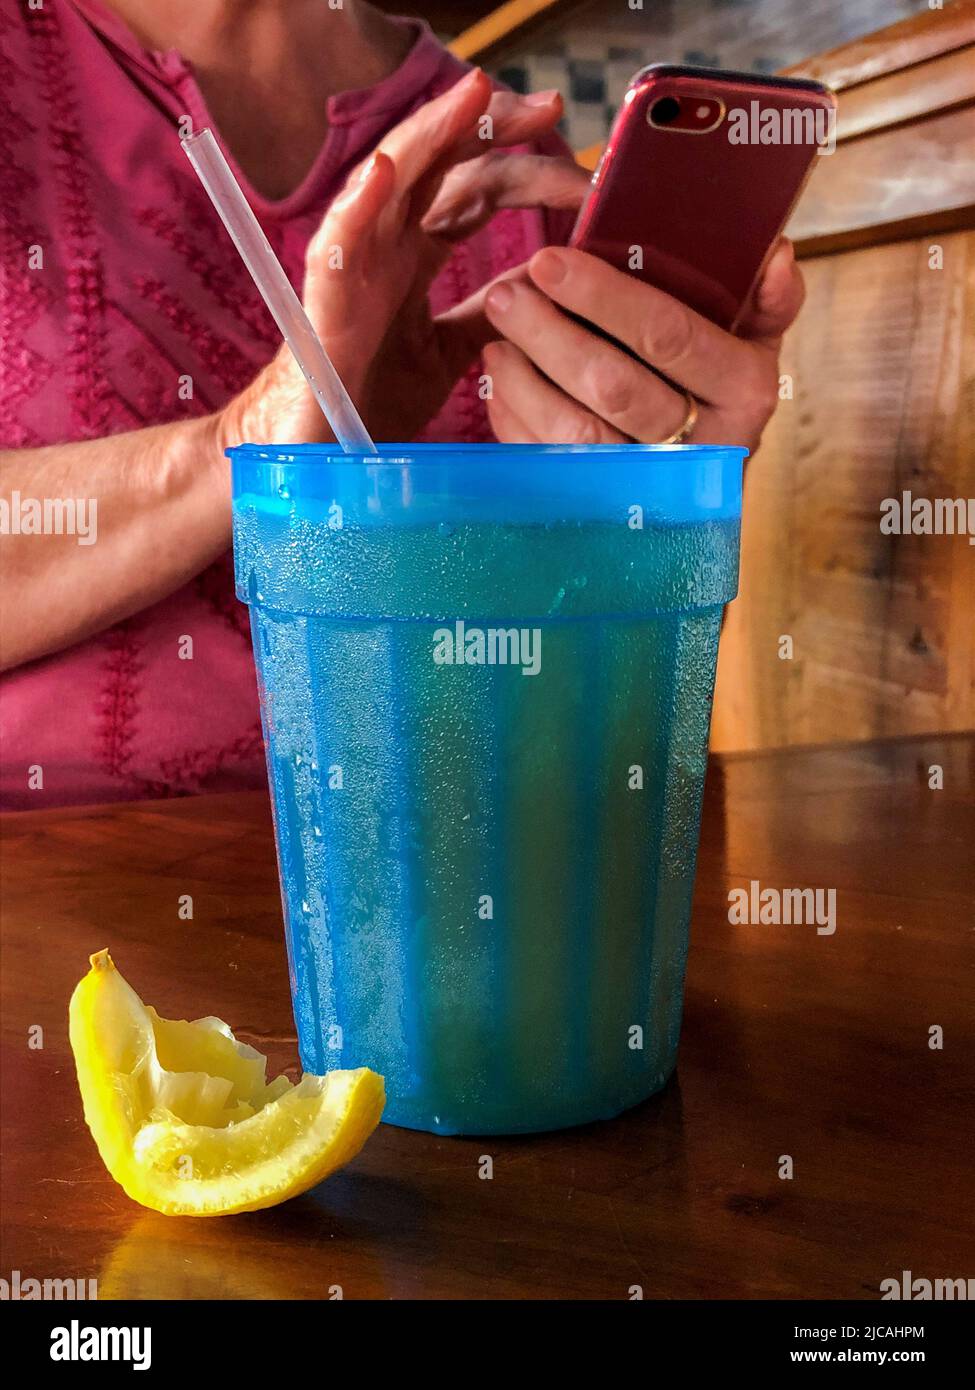 Kaltes Getränk in blauem Plastikglas mit Kondenswasser und einem Stroh und einem gepressten Zitronenkeil auf dem Tisch, und eine Frau Hände mit einem mobilen cel Stockfoto